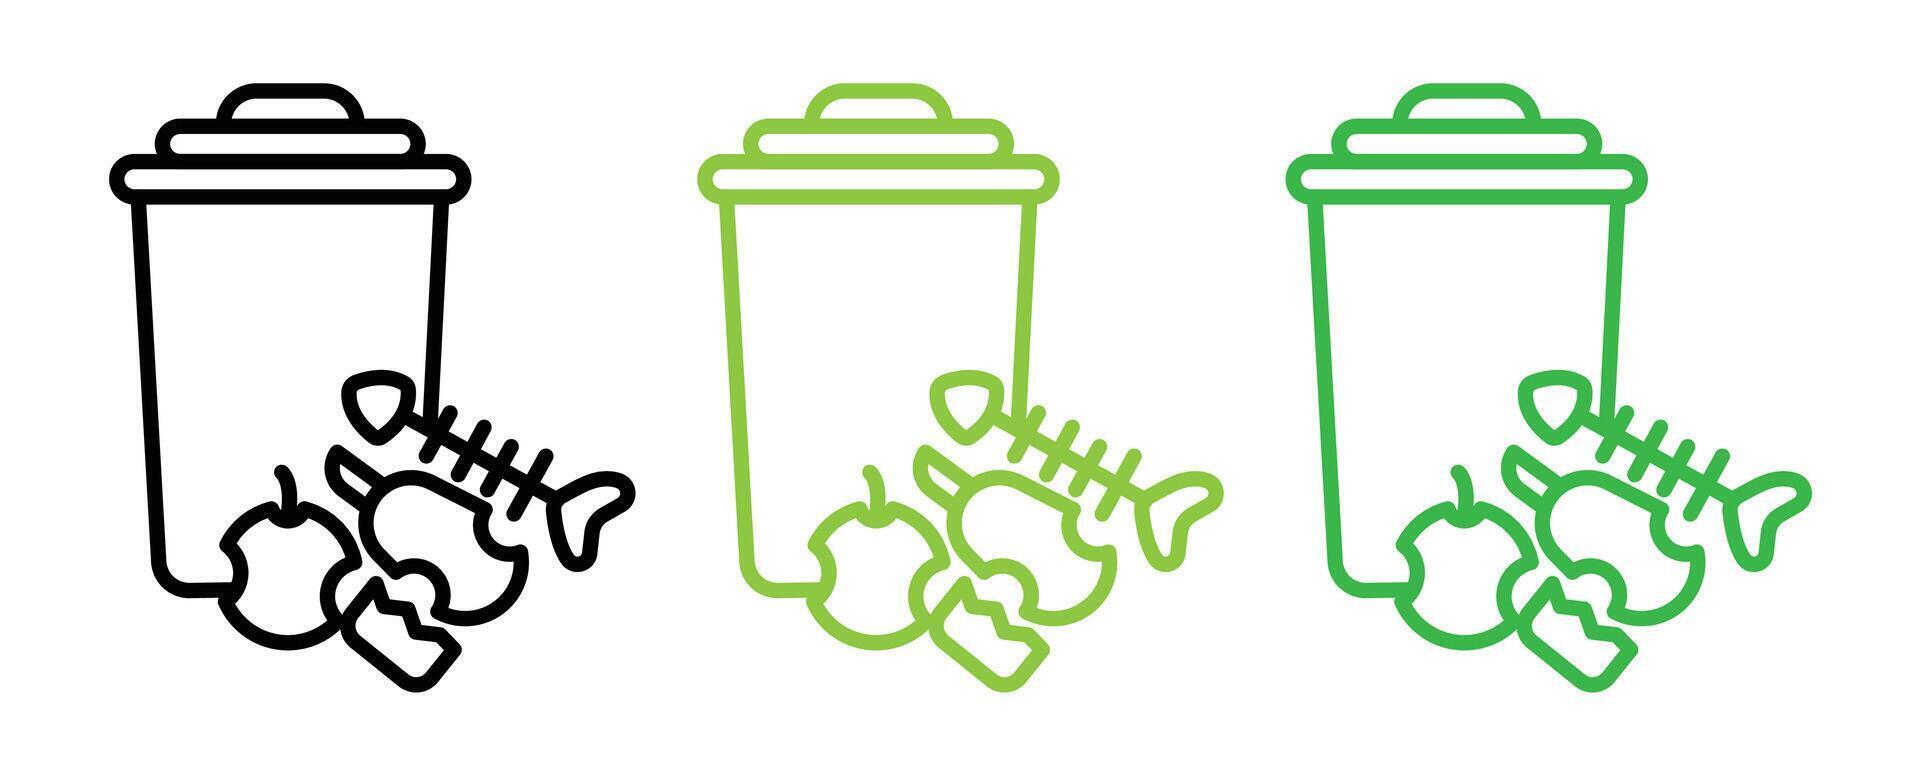 Food waste icon vector